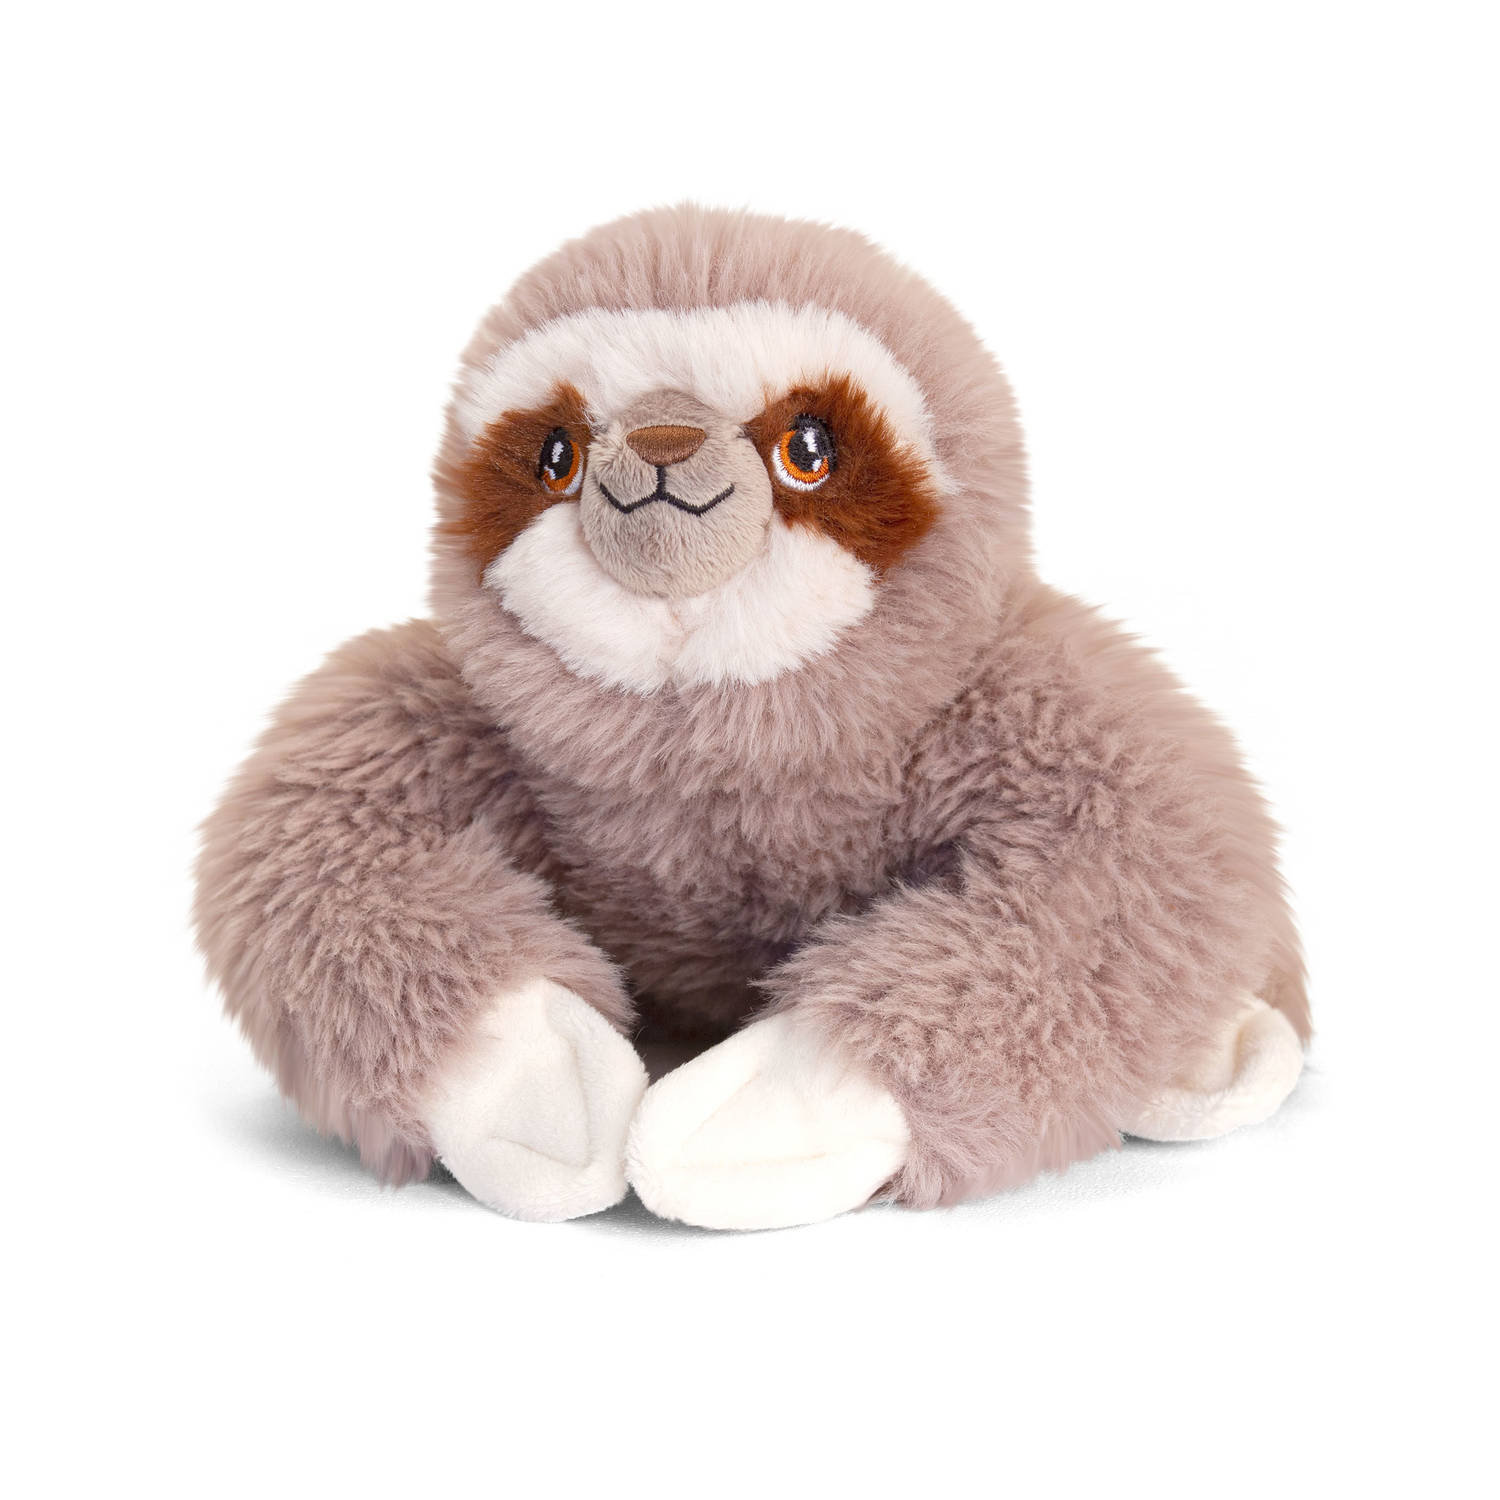 Pluche knuffel dieren luiaard 18 cm - Knuffelbeesten speelgoed